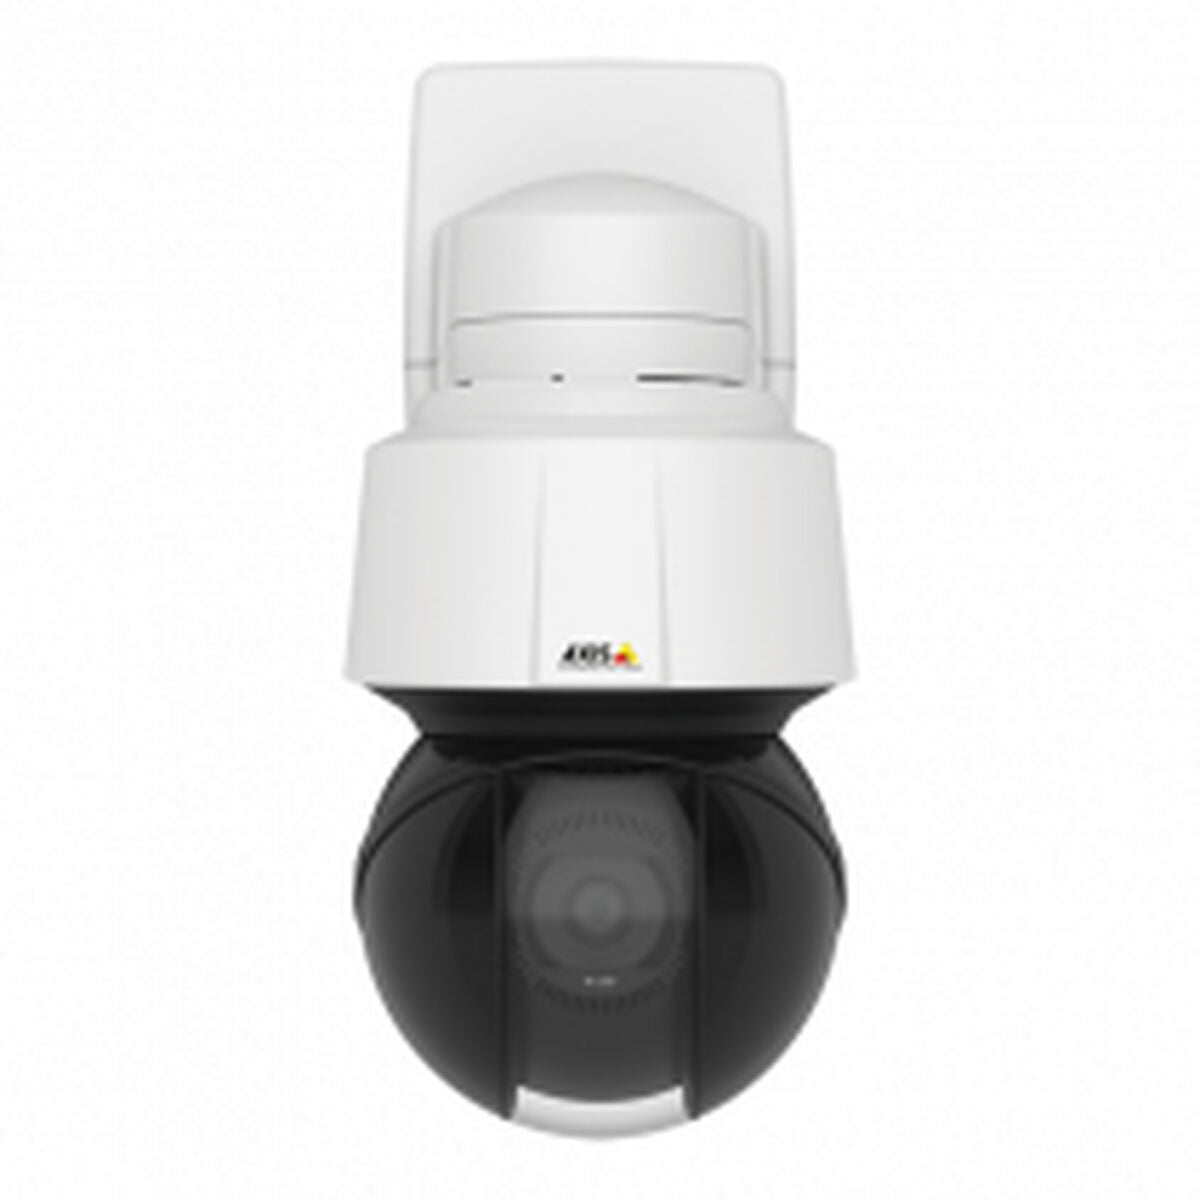 Camescope de surveillance Axis Q6135-LE